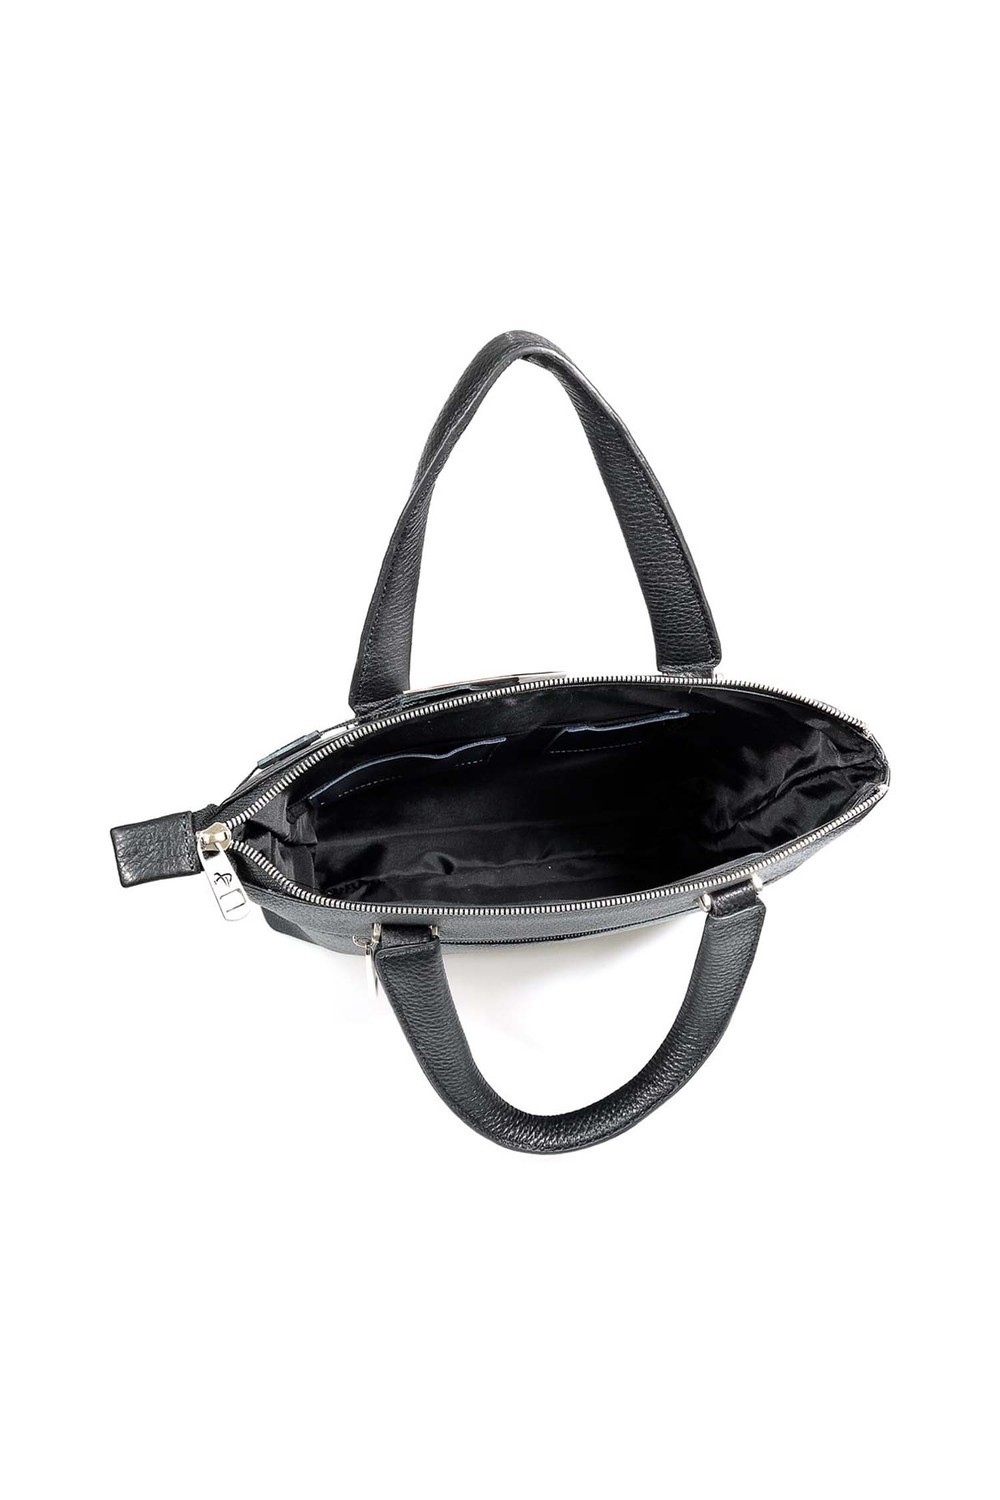 Портфель Pellecon, размер один размер, цвет чёрный - фото 3